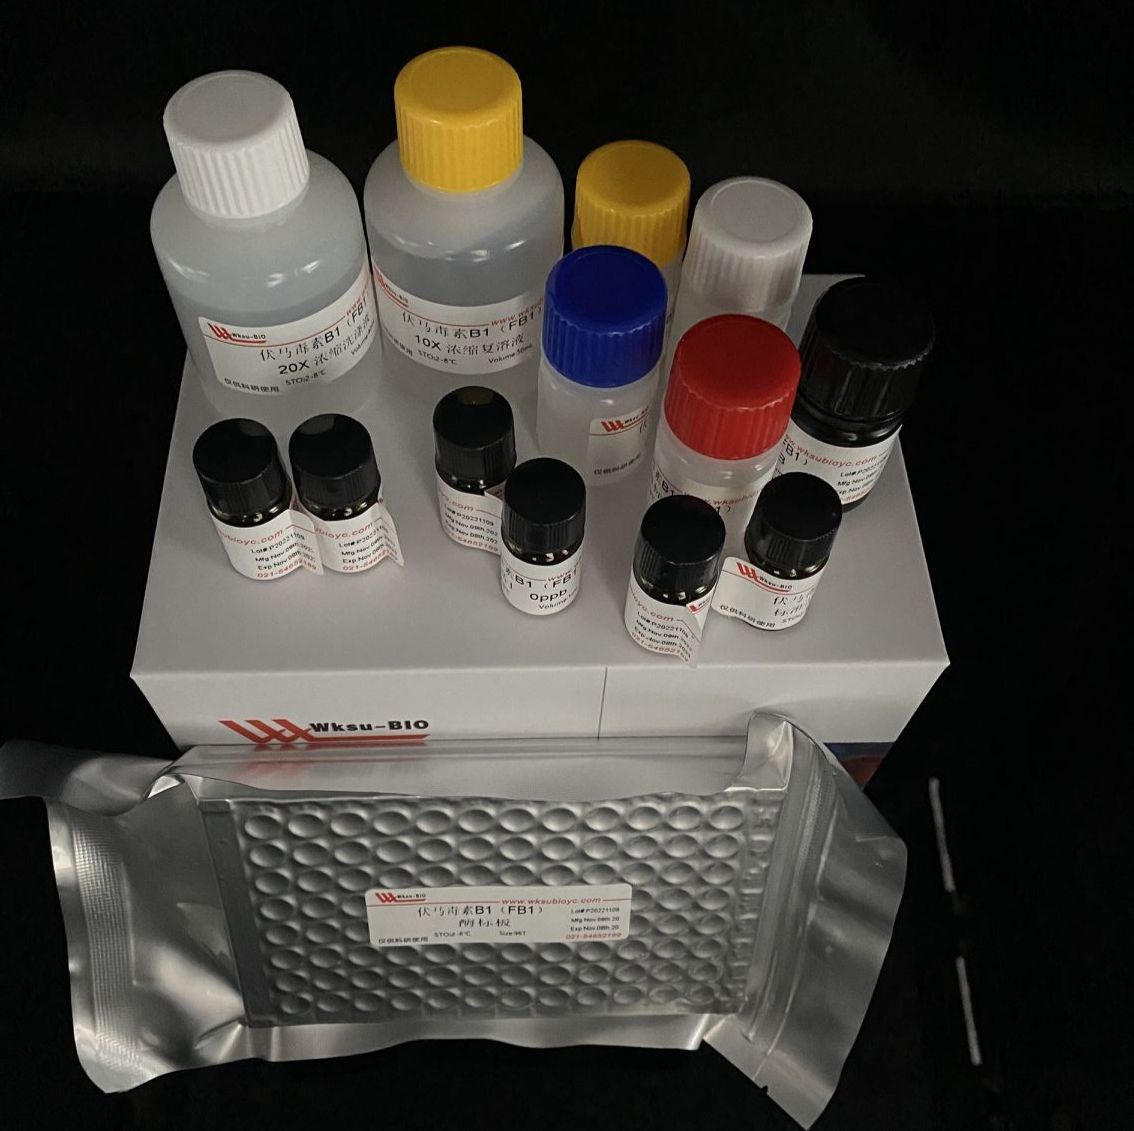 糖化酶/葡萄糖淀粉酶试剂盒